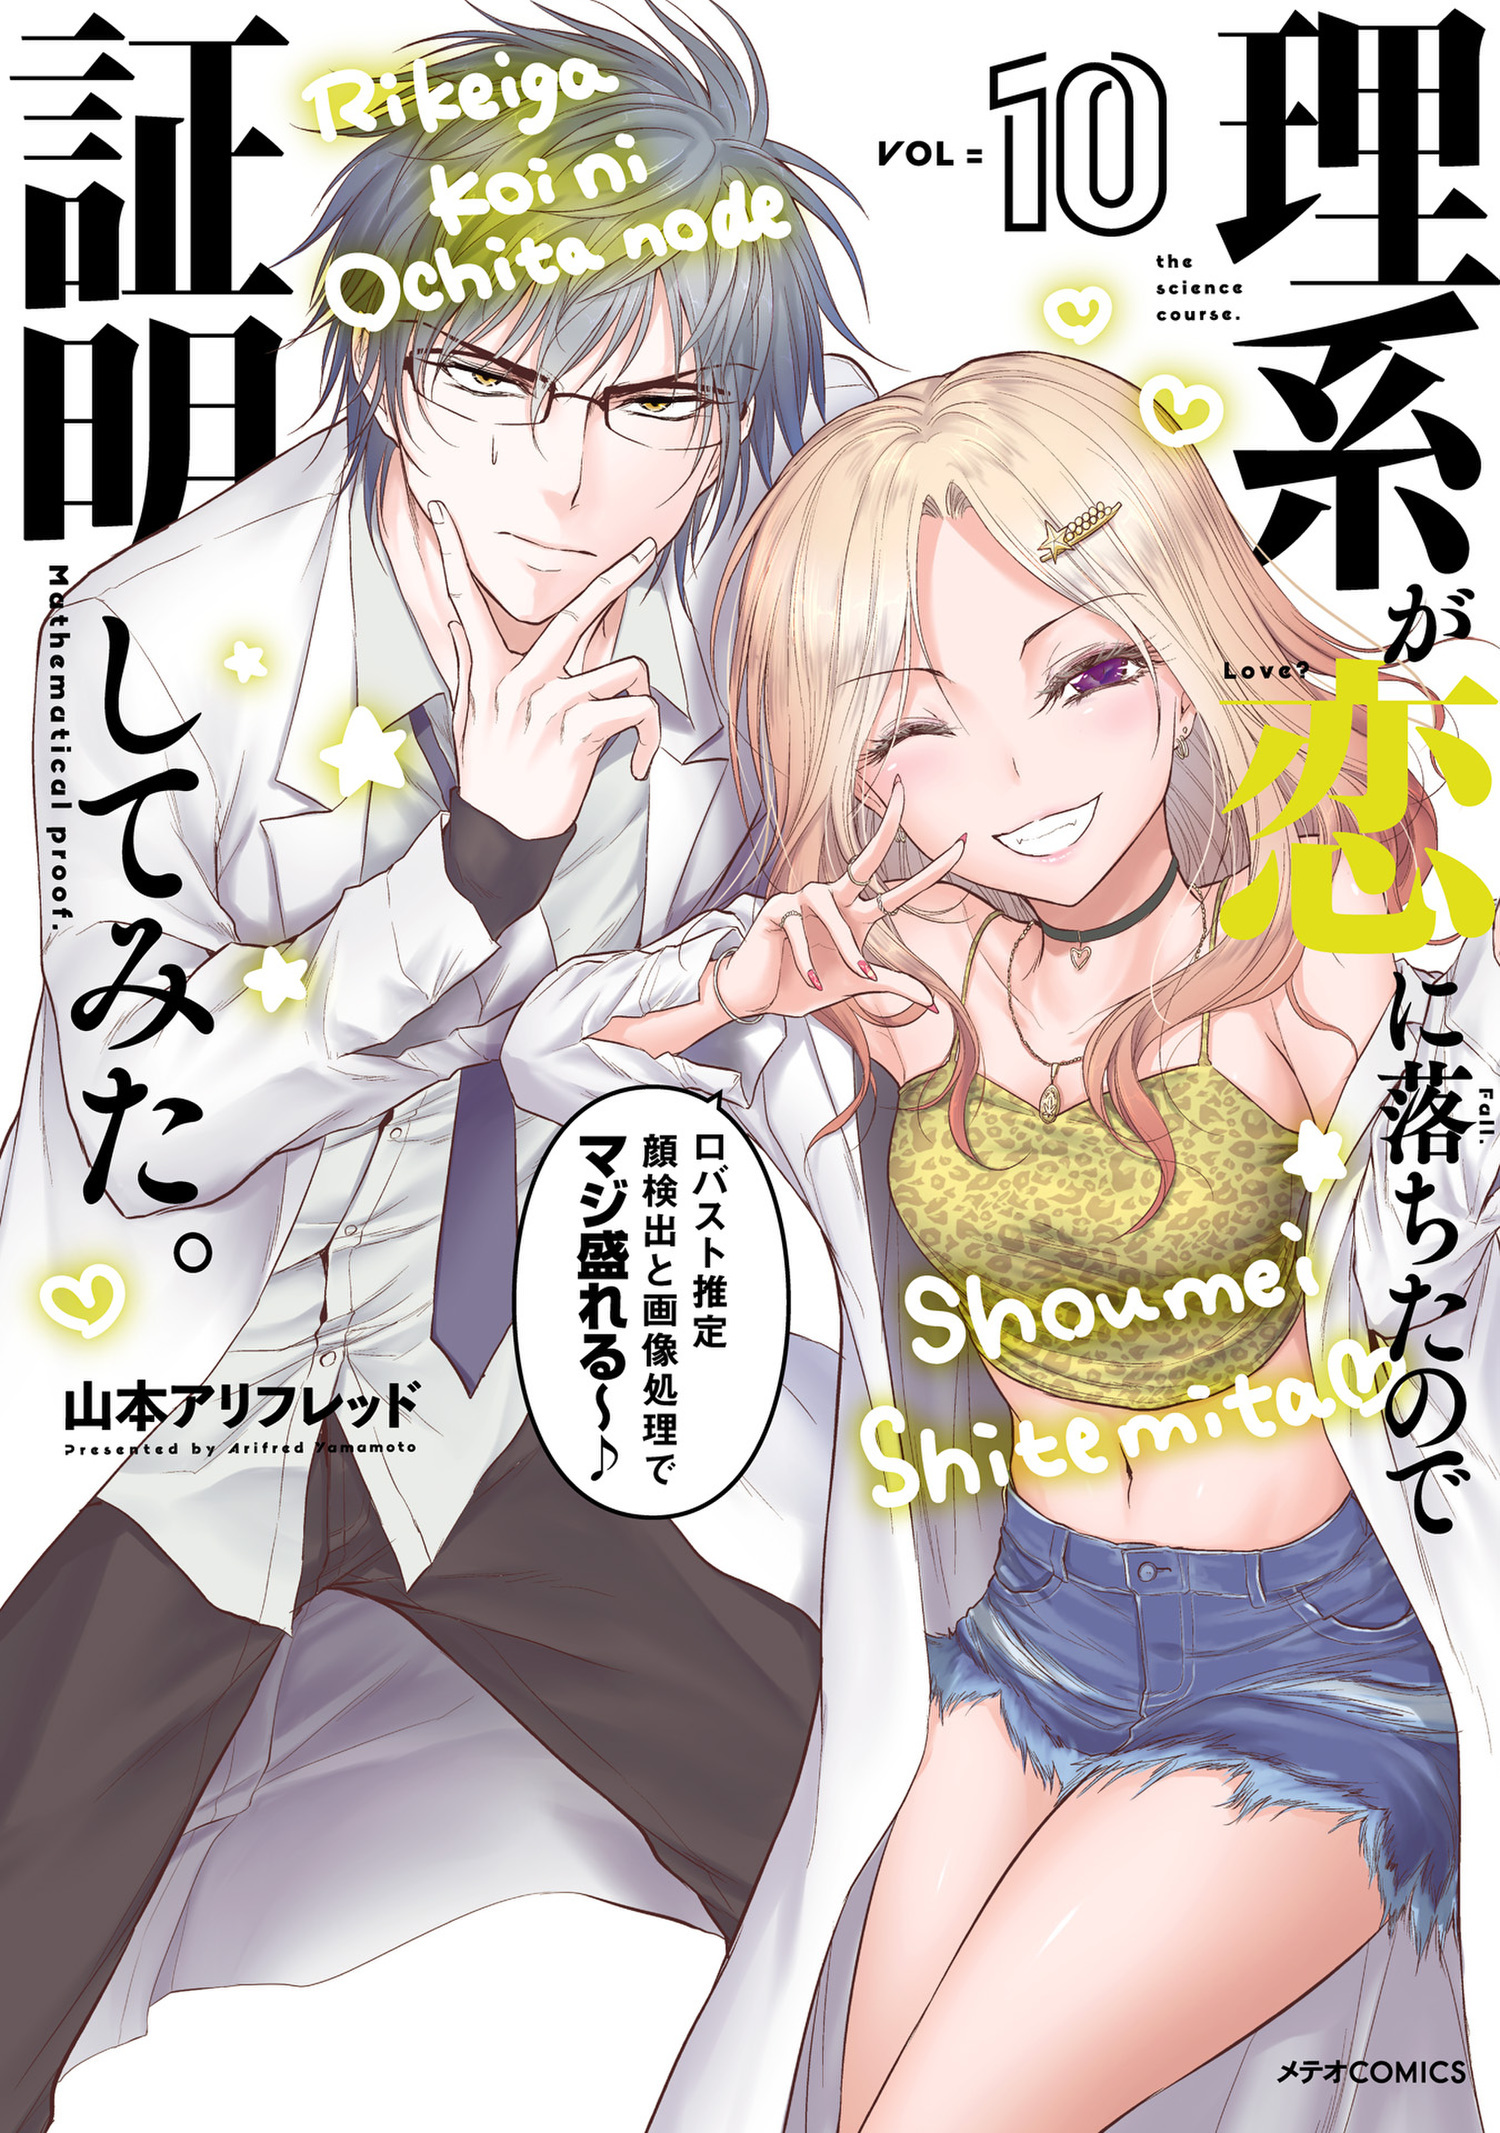 Review: Rikei ga Koi ni Ochita no de Shoumei Shitemita